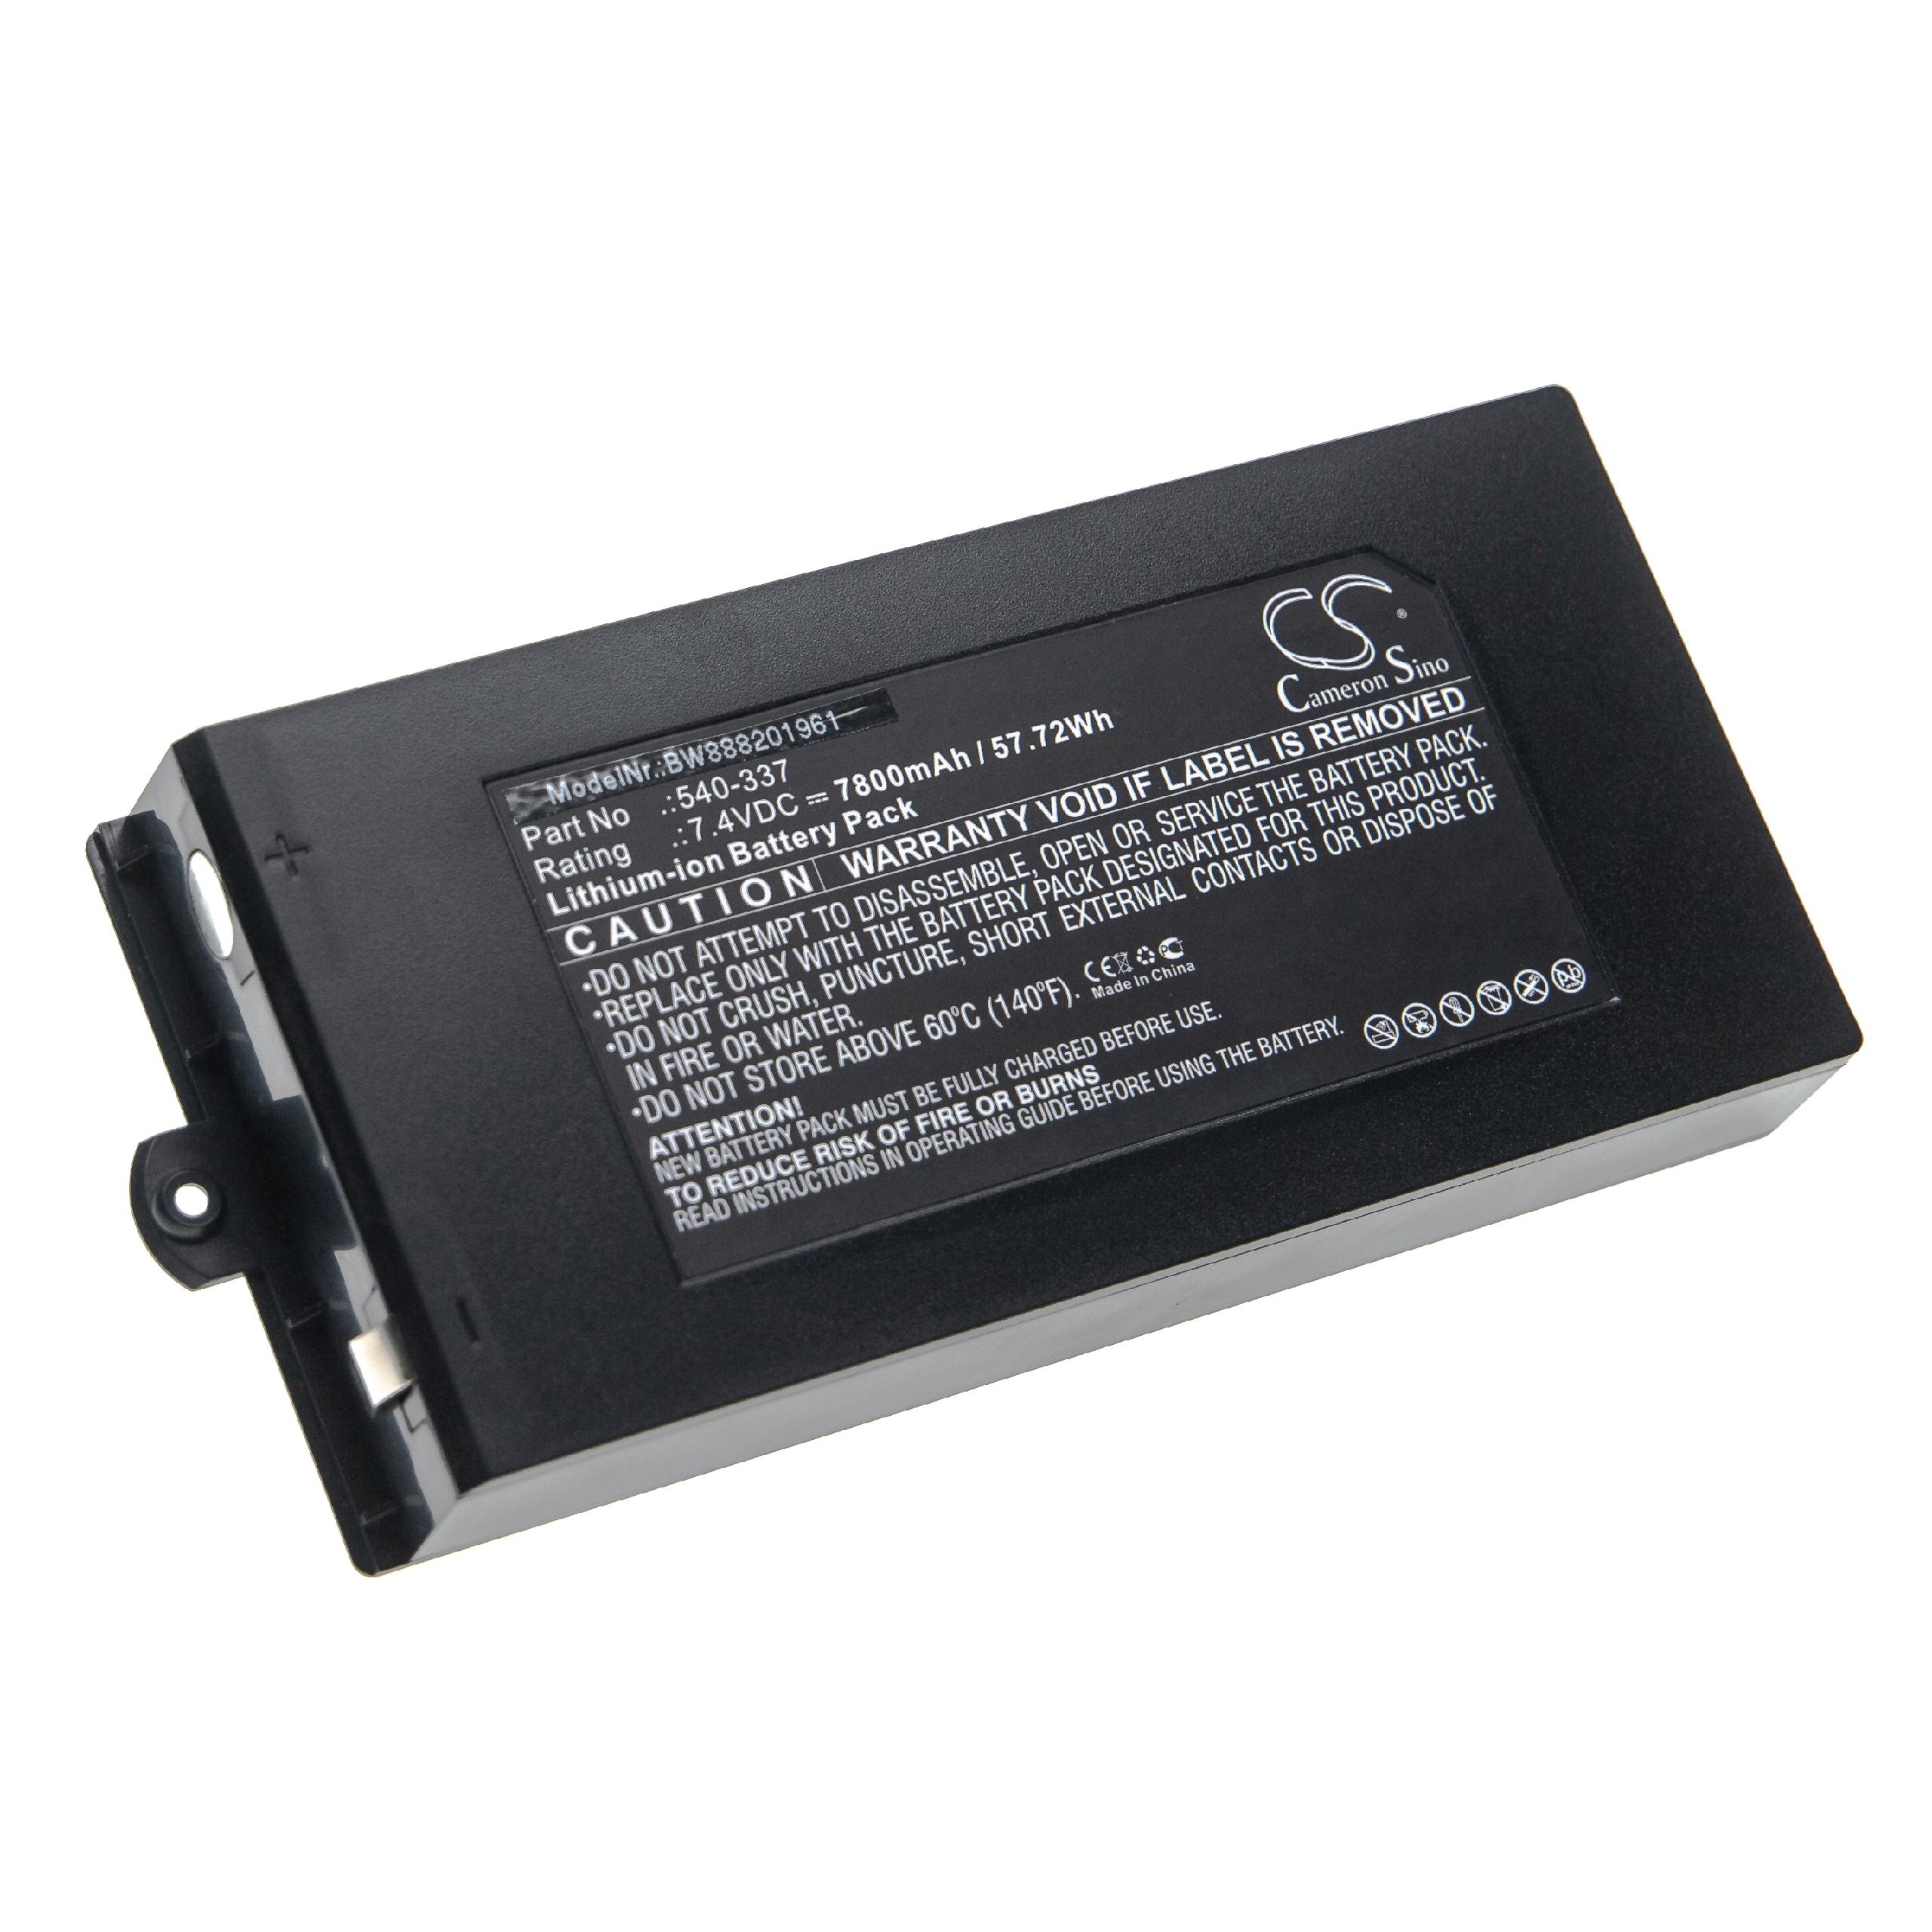 Batería reemplaza Owon 540-337 para dispositivo medición Owon - 7800 mAh 7,4 V Li-Ion